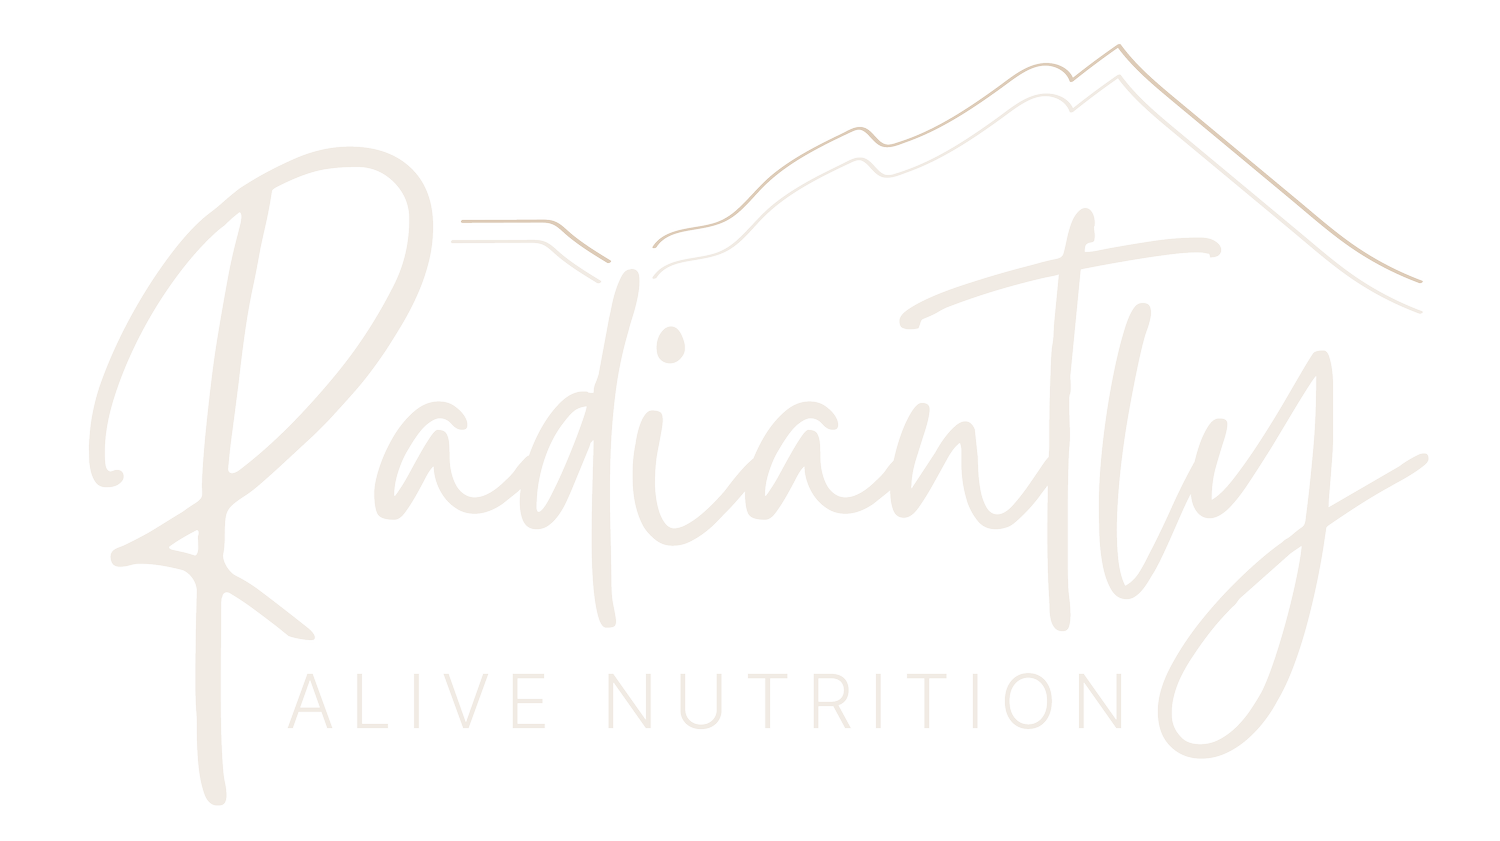 Radiantly Alive Nutrition